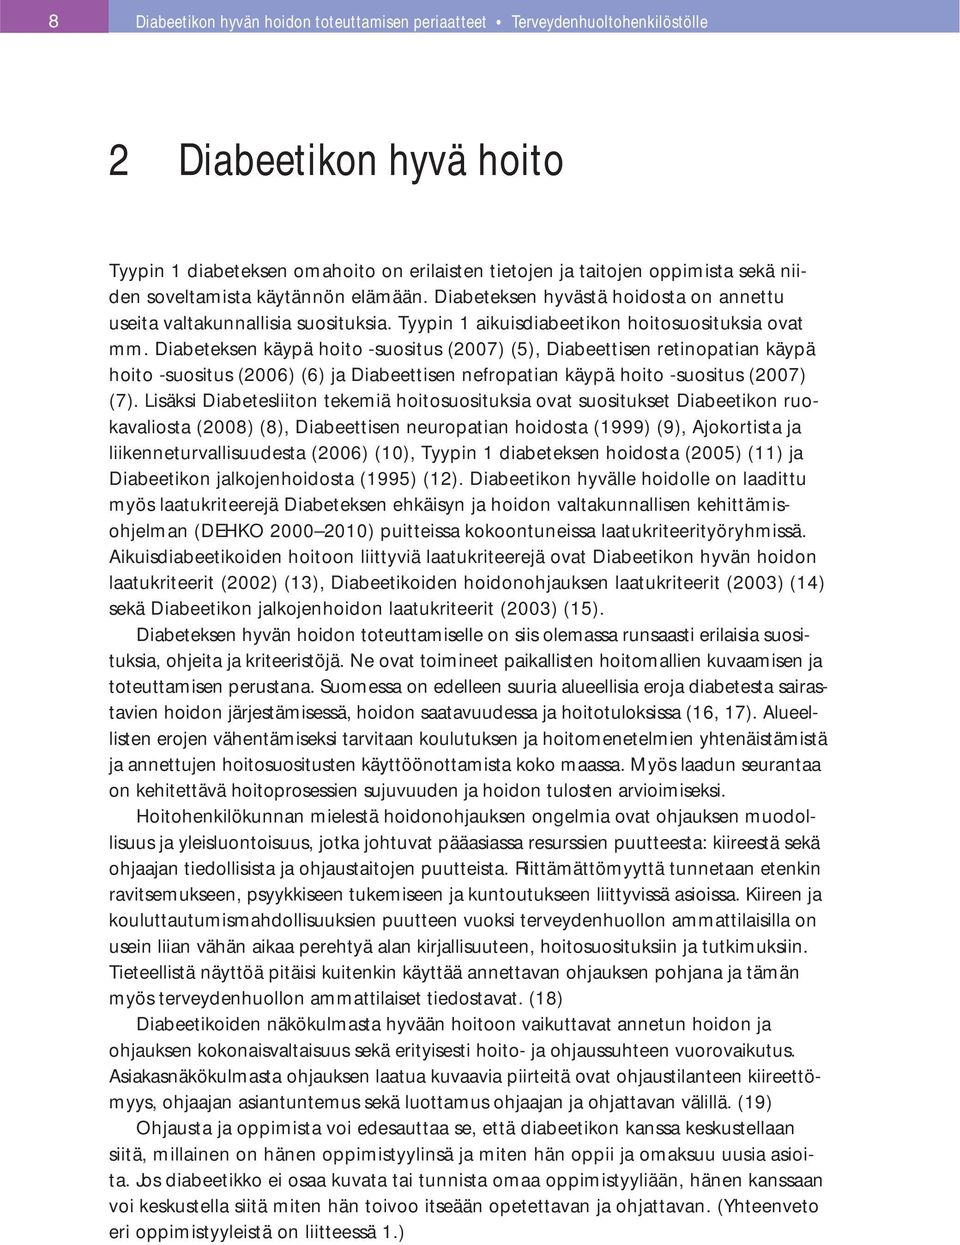 Diabeteksen käypä hoito -suositus (2007) (5), Diabeettisen retinopatian käypä hoito -suositus (2006) (6) ja Diabeettisen nefropatian käypä hoito -suositus (2007) (7).